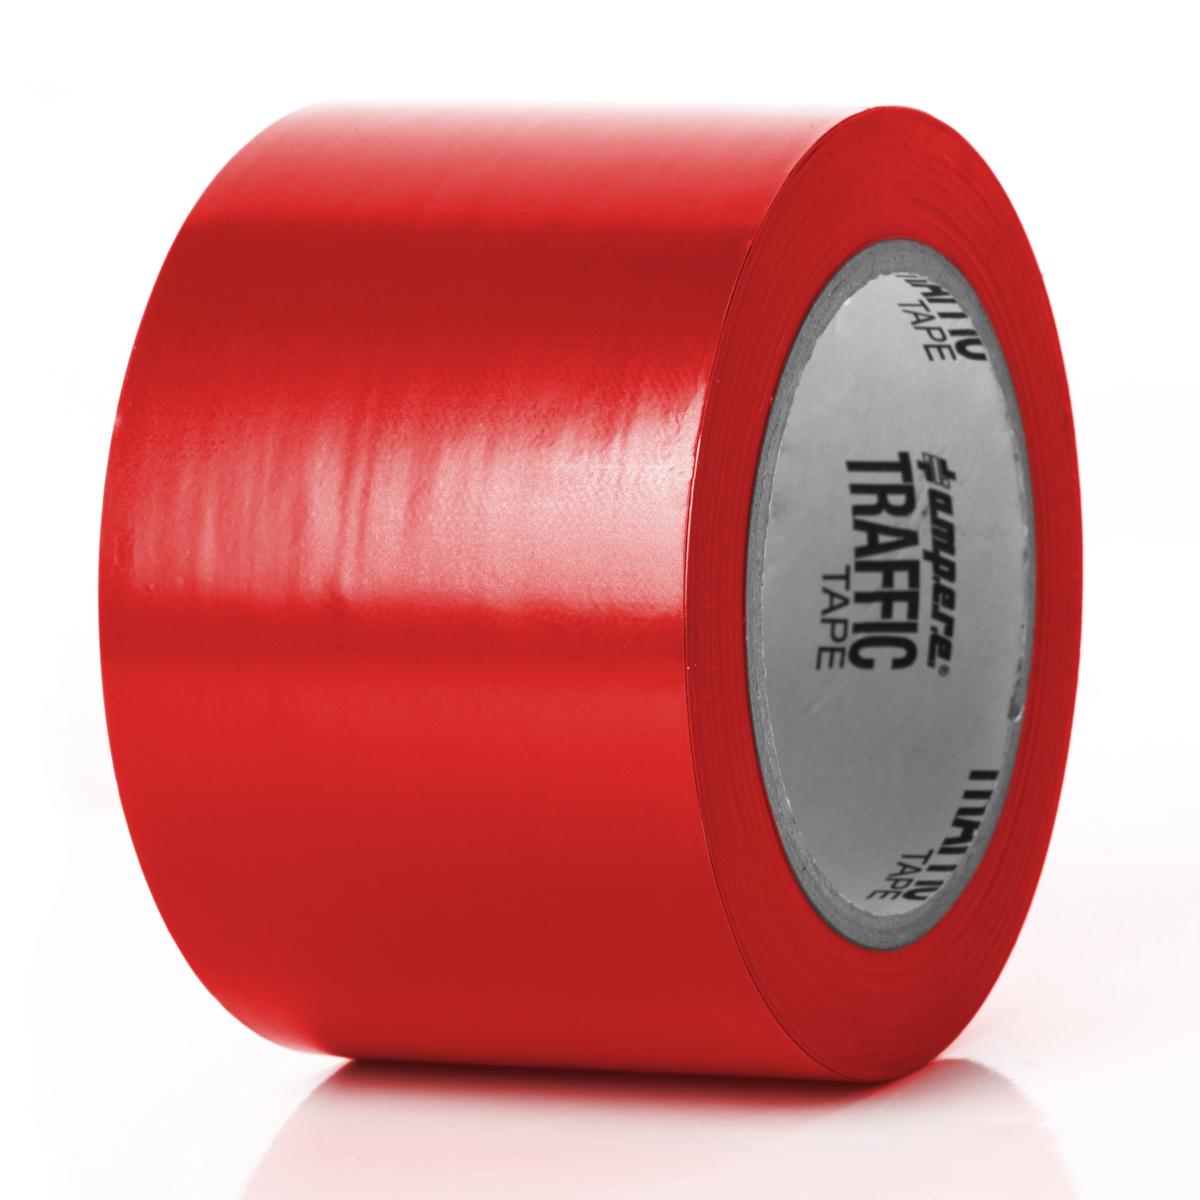 Bodenmarkierungsband Traffic Tape® Standard - Dicke 0,15 mm, Breite 75 mm, diverse Farben